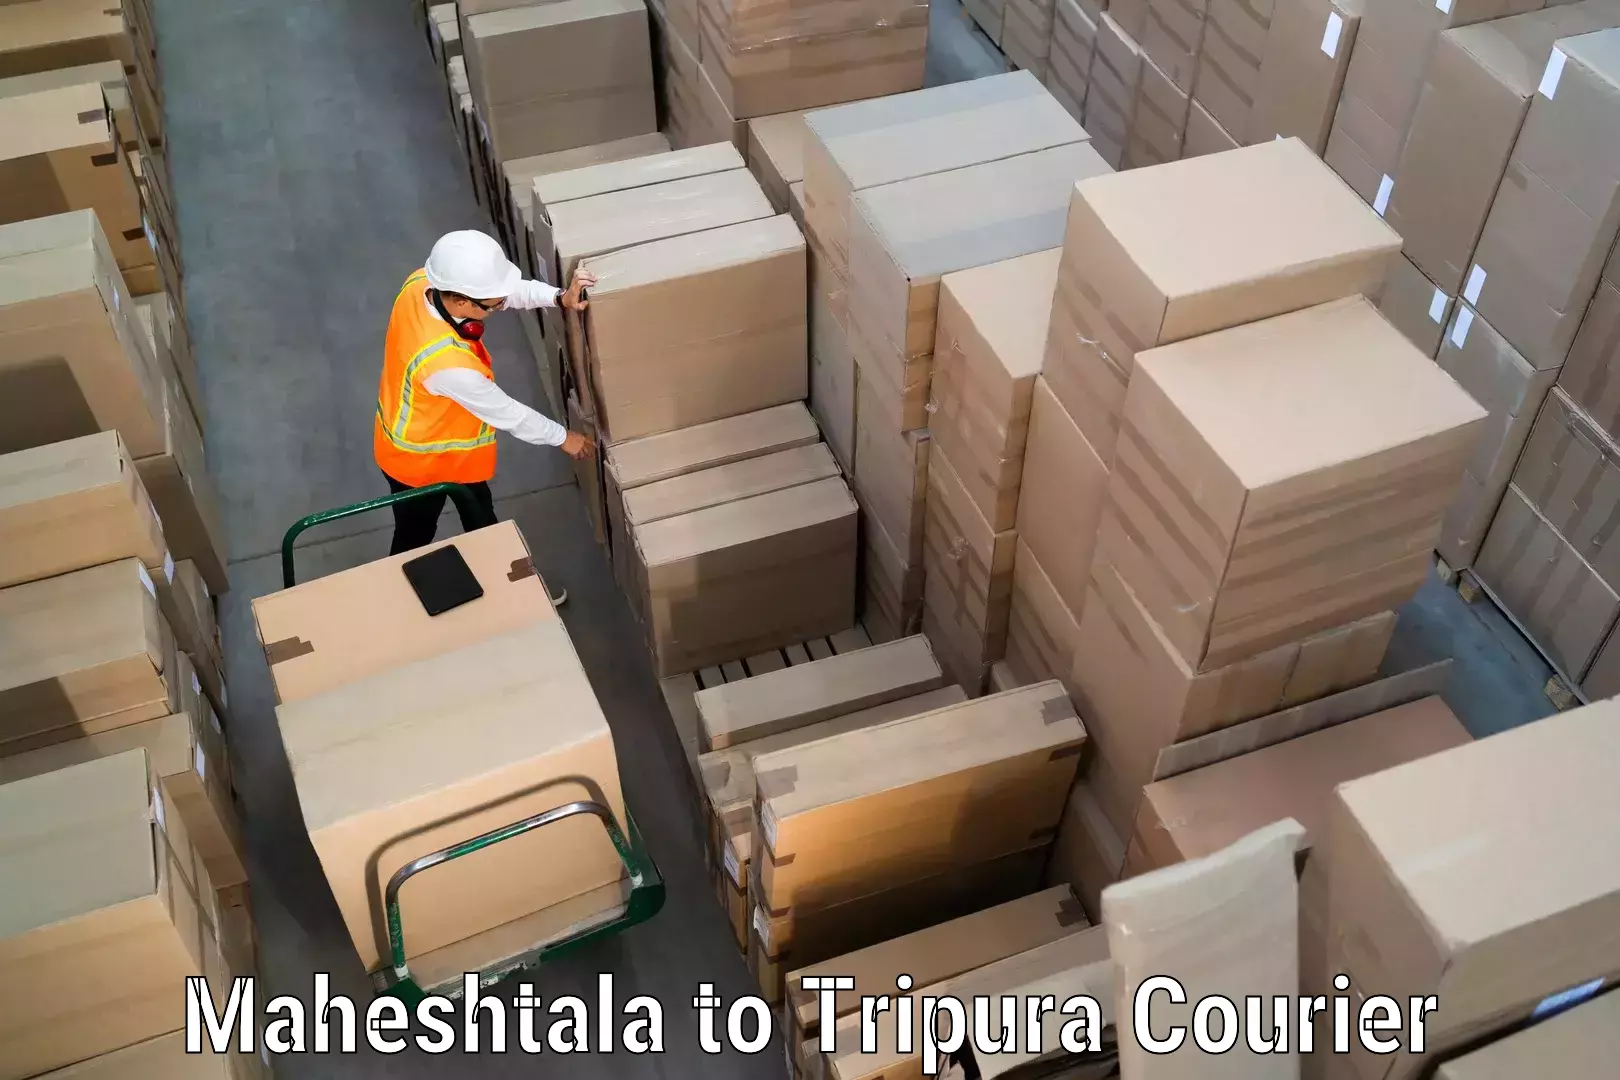 Multi-national courier services Maheshtala to Sonamura